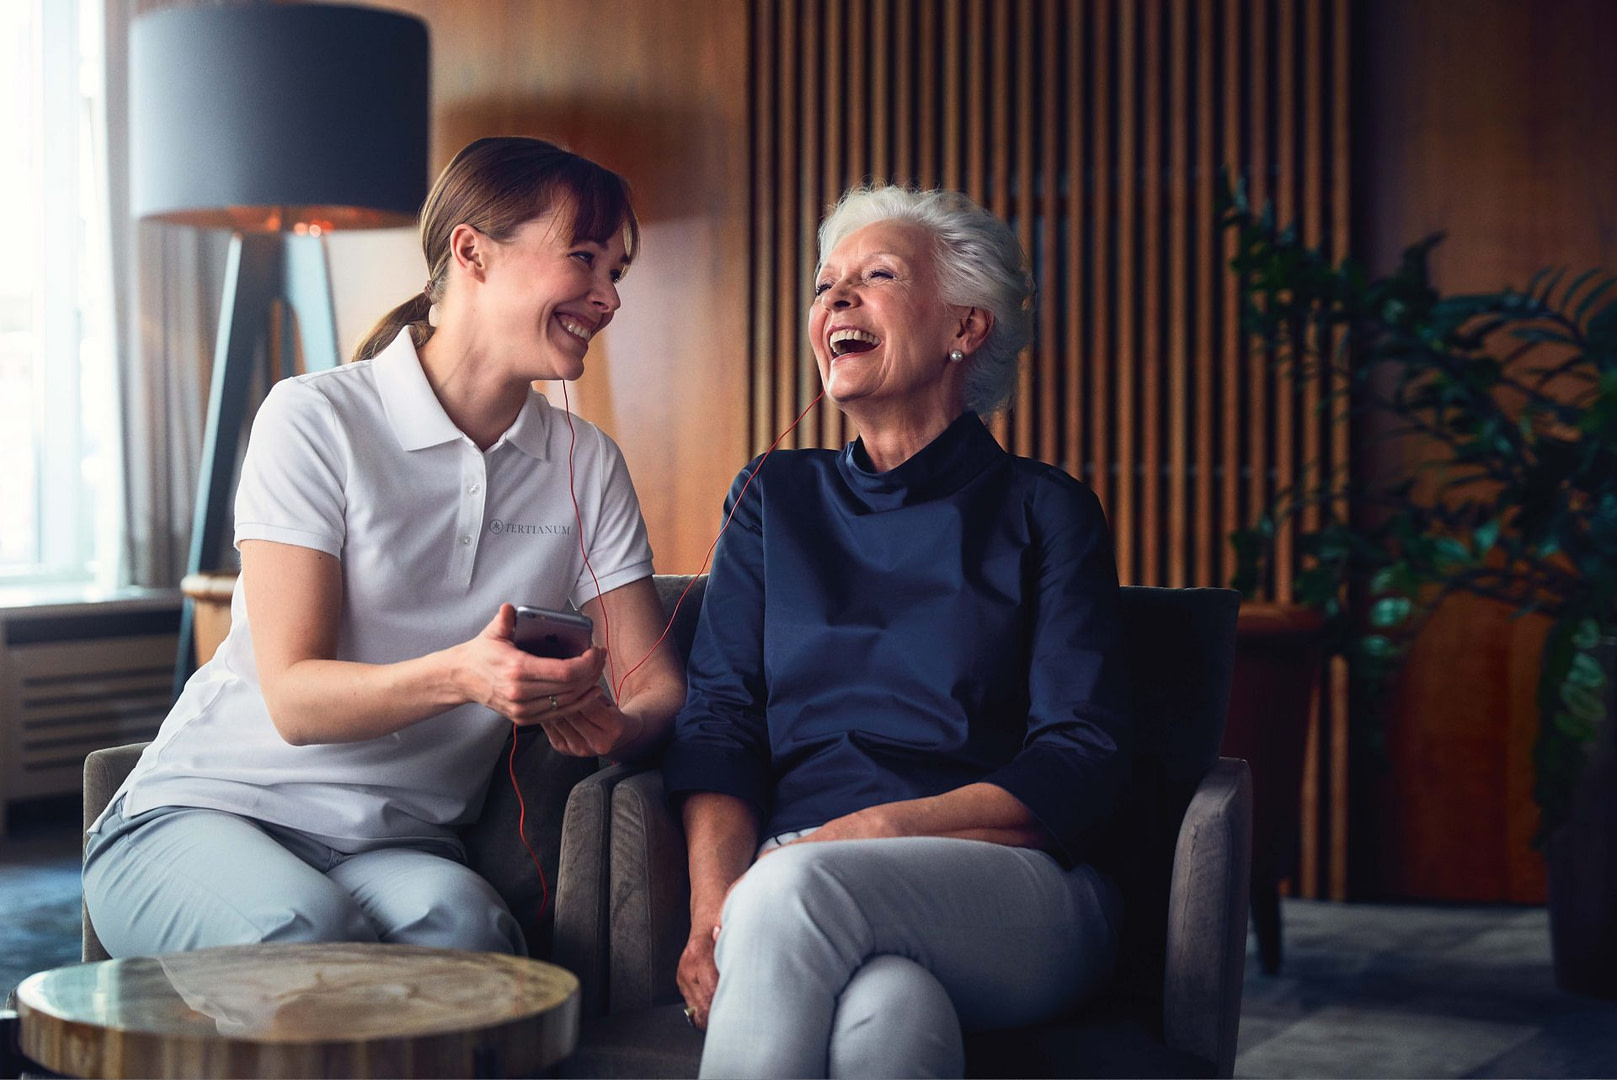 Eine Seniorin sitz neben einer Pflegerin, beide lachen fröhlich.